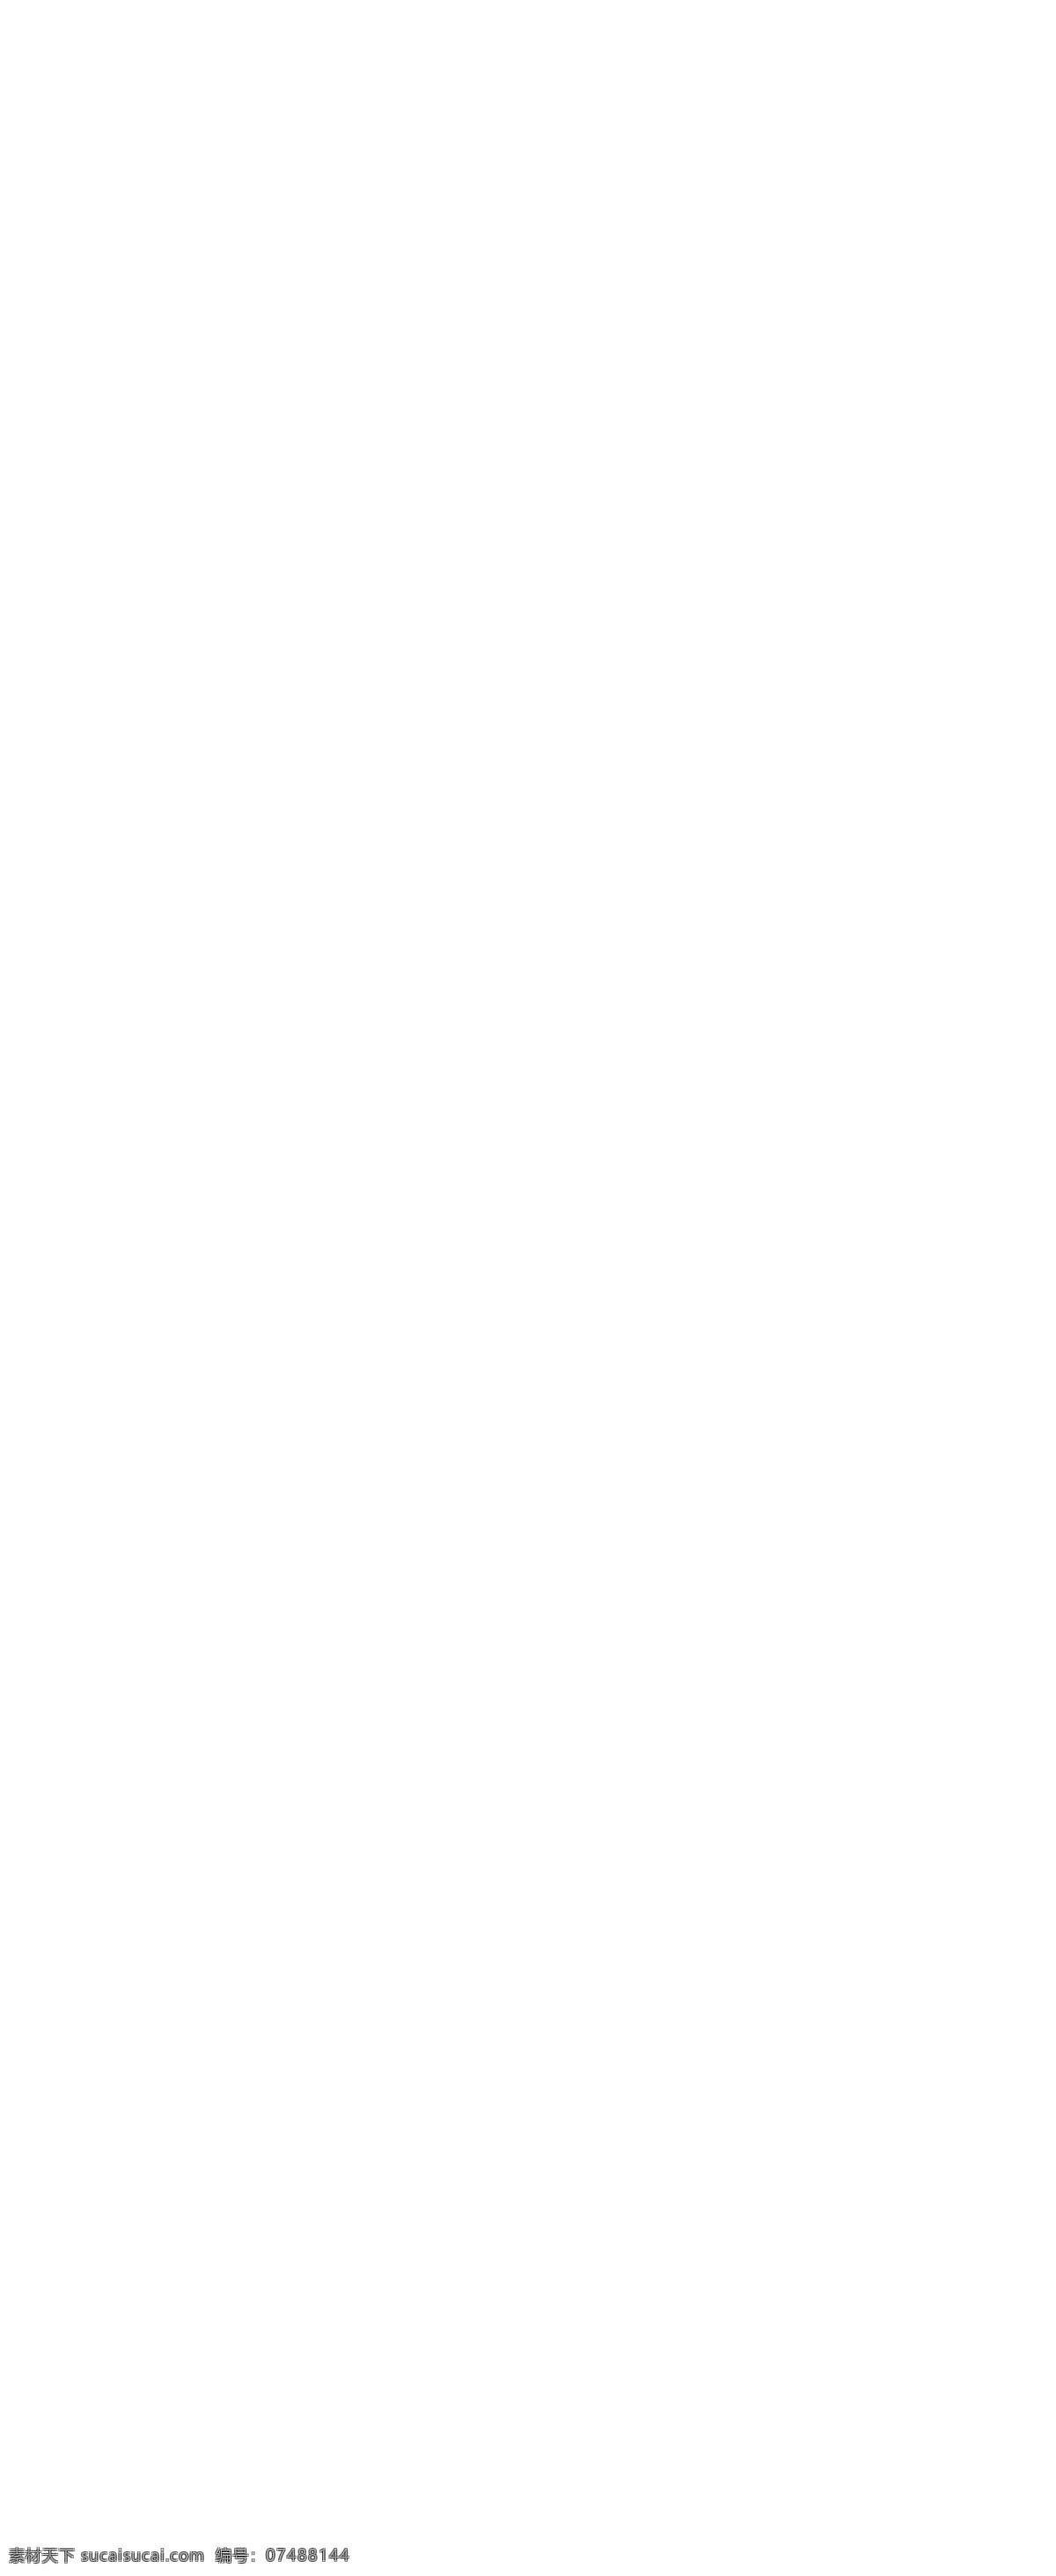 汉森 国际 官 网 服装网站 购买按钮 森国际官网 国外 服装 销售网站 汉森国际官网 首页大图切换 电网网站模板 企业网站 网页素材 网页模板